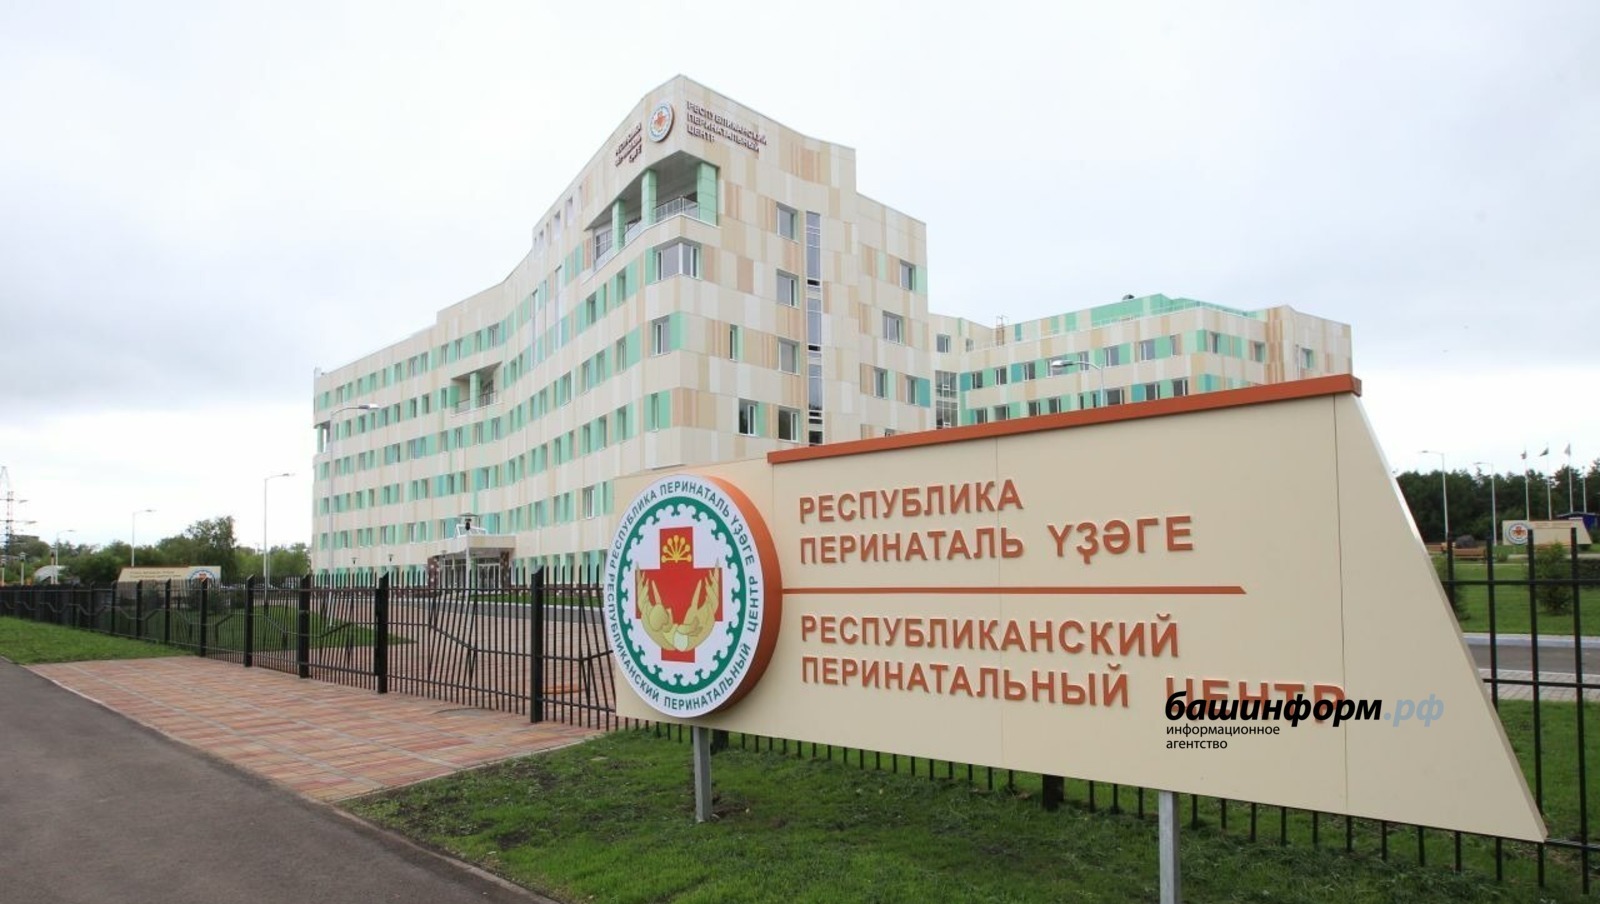 Перинатальный центр Башкирии признан одним из лучших в России